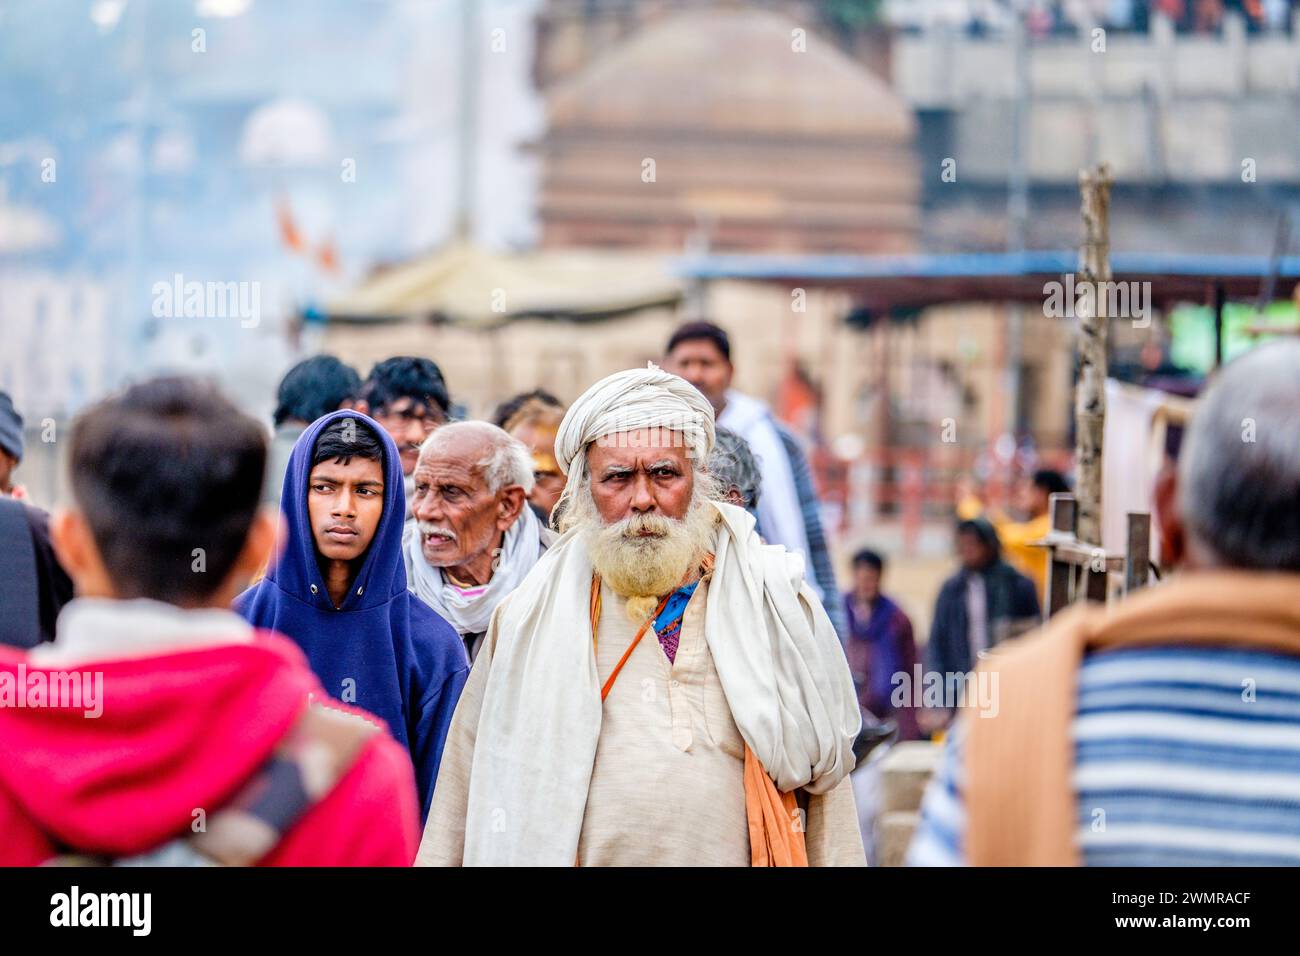 Un sadhu / Saint homme à Varanasi sur le Gange, Inde Banque D'Images